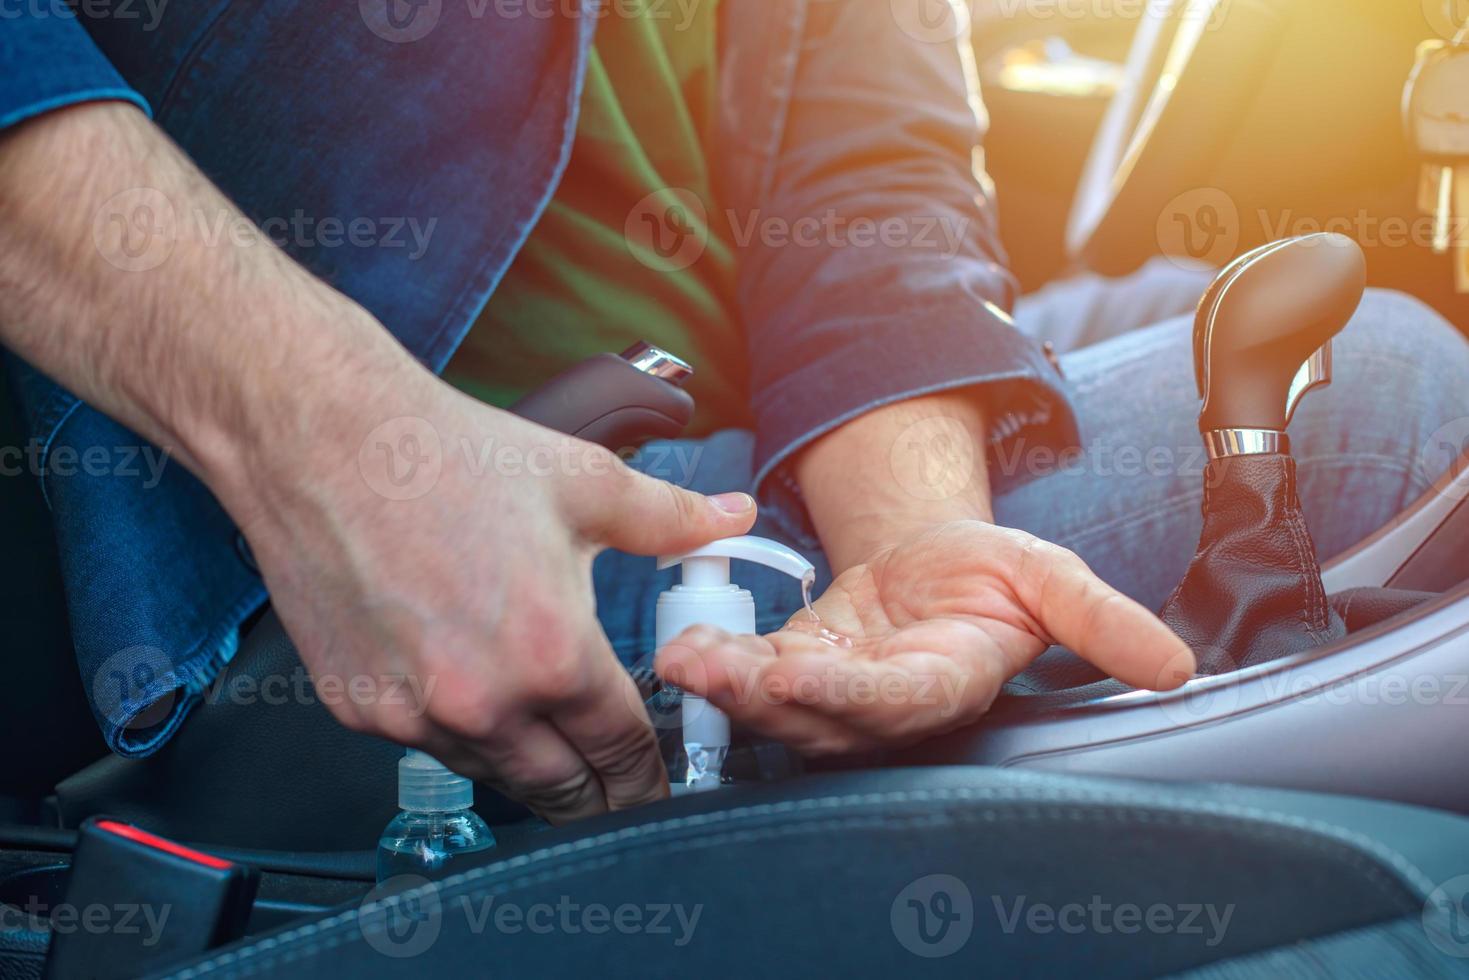 homem sentado no carro desinfeta as mãos para evitar infecção por coronavírus foto